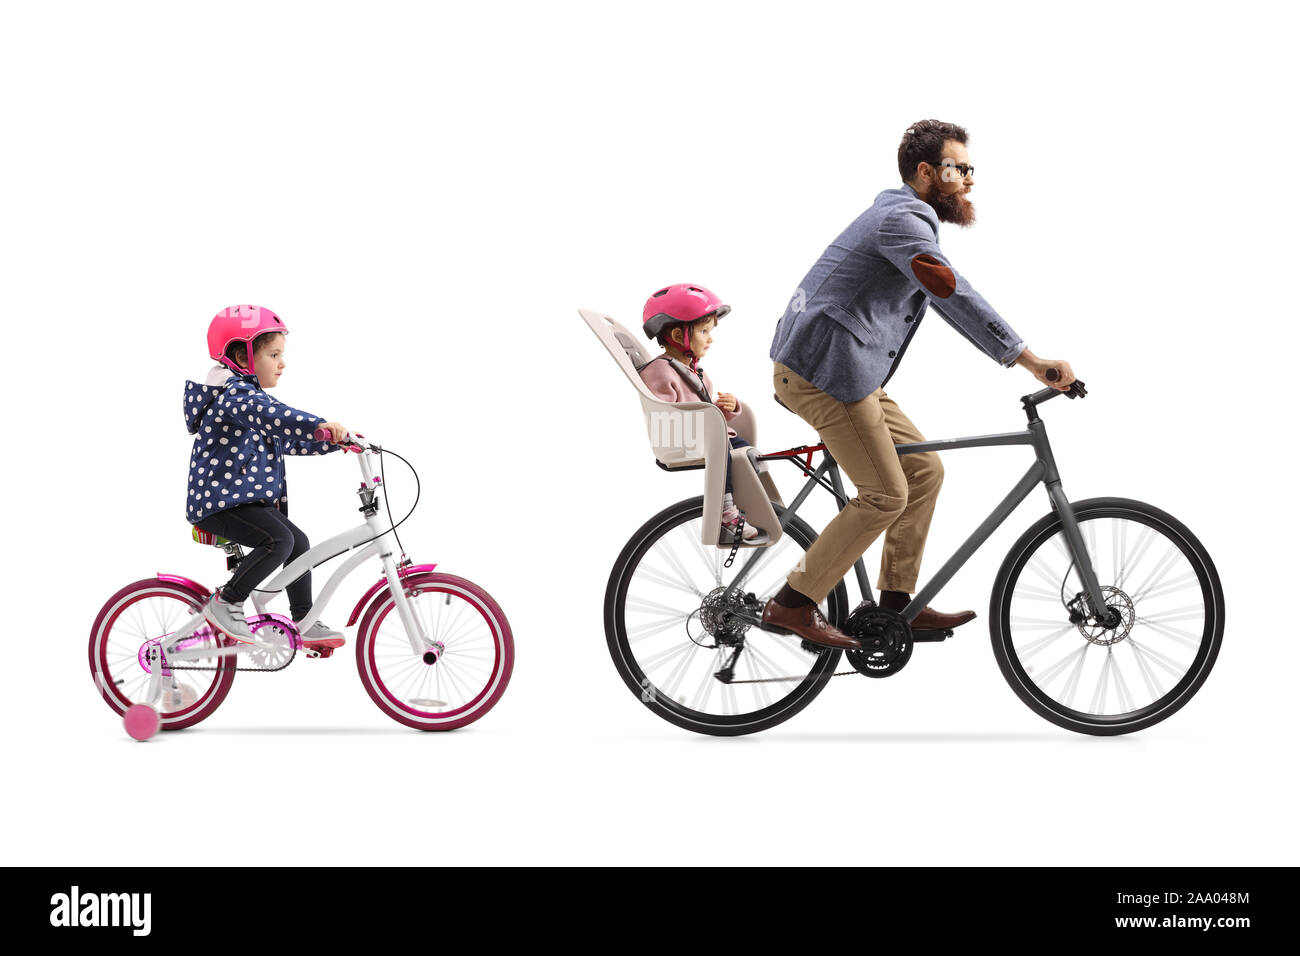 Frau Radfahrer auf Bike / Fahrrad mit + 3 Kinder; Co-Pilot Kindersitz mit  Helm & Abschleppen Zyklus Chariot Anhänger mit zwei / 2 Kinder mit Helmen.  VEREINIGTES KÖNIGREICH Stockfotografie - Alamy